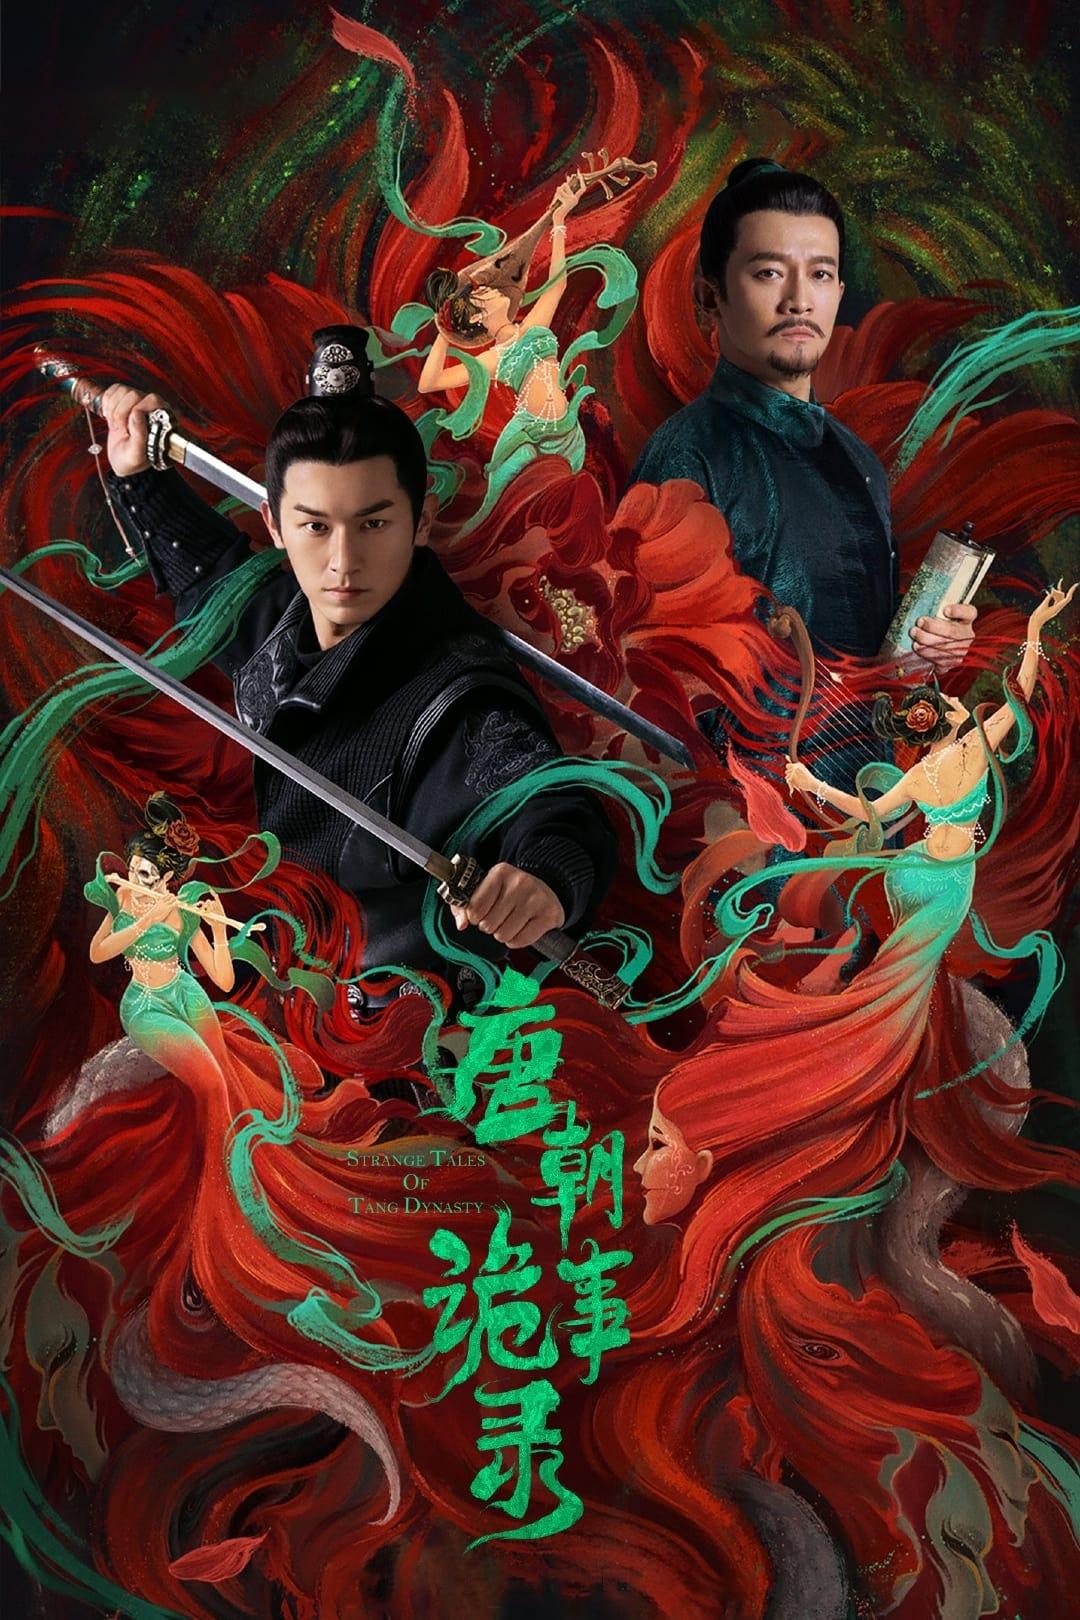 Les saisons de Strange Tales of Tang Dynasty II To the West sont-elles disponibles sur Netflix ou autre ?